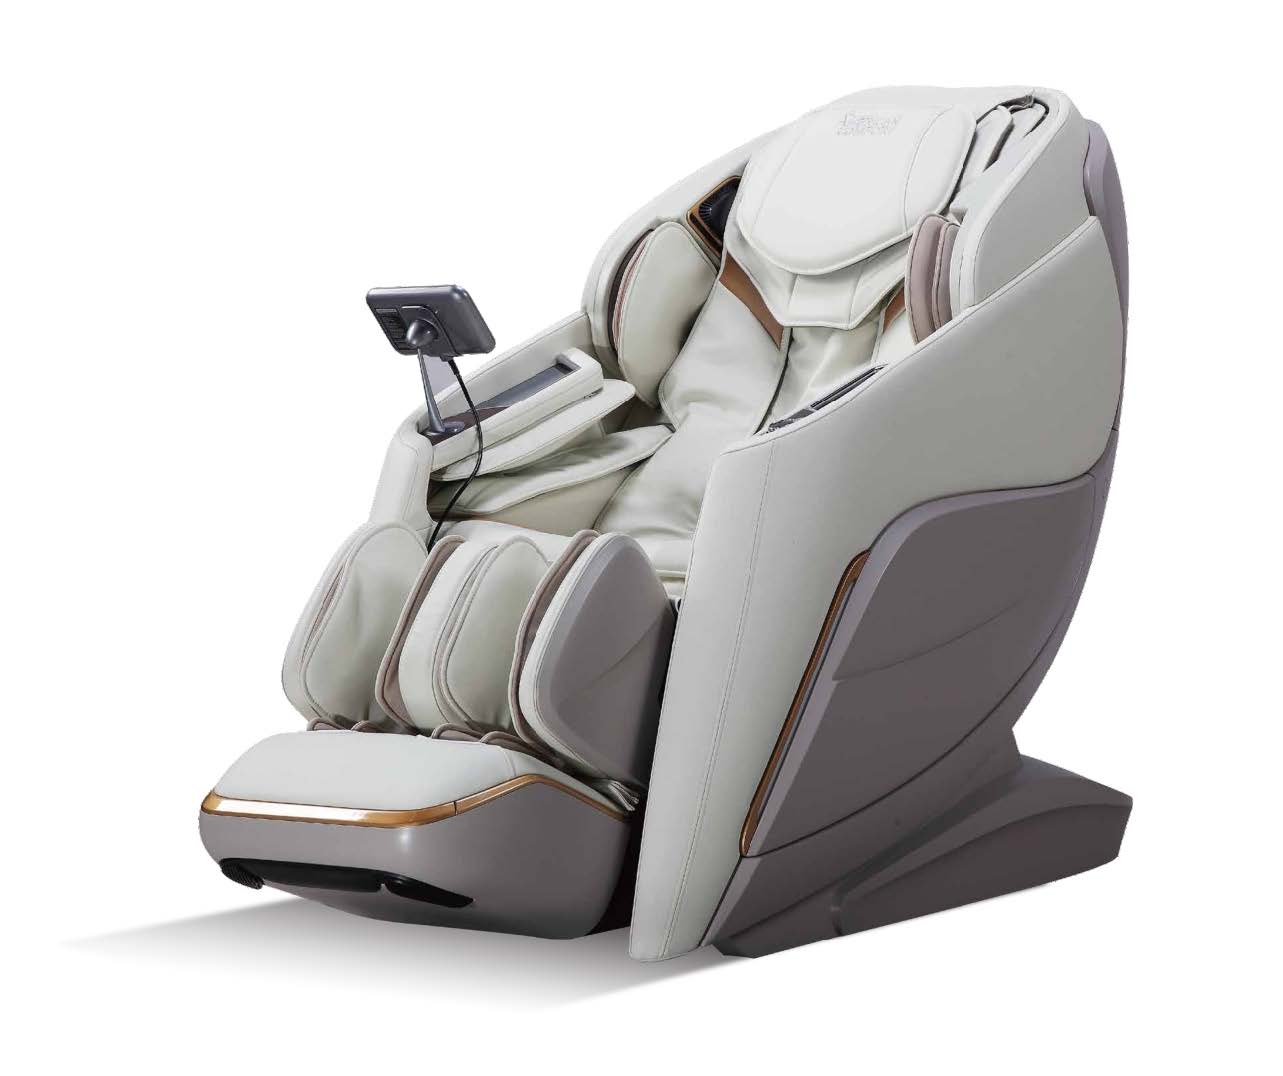 5D Massage Chair in mainpuri, 5D Massage Chair Manufacturers